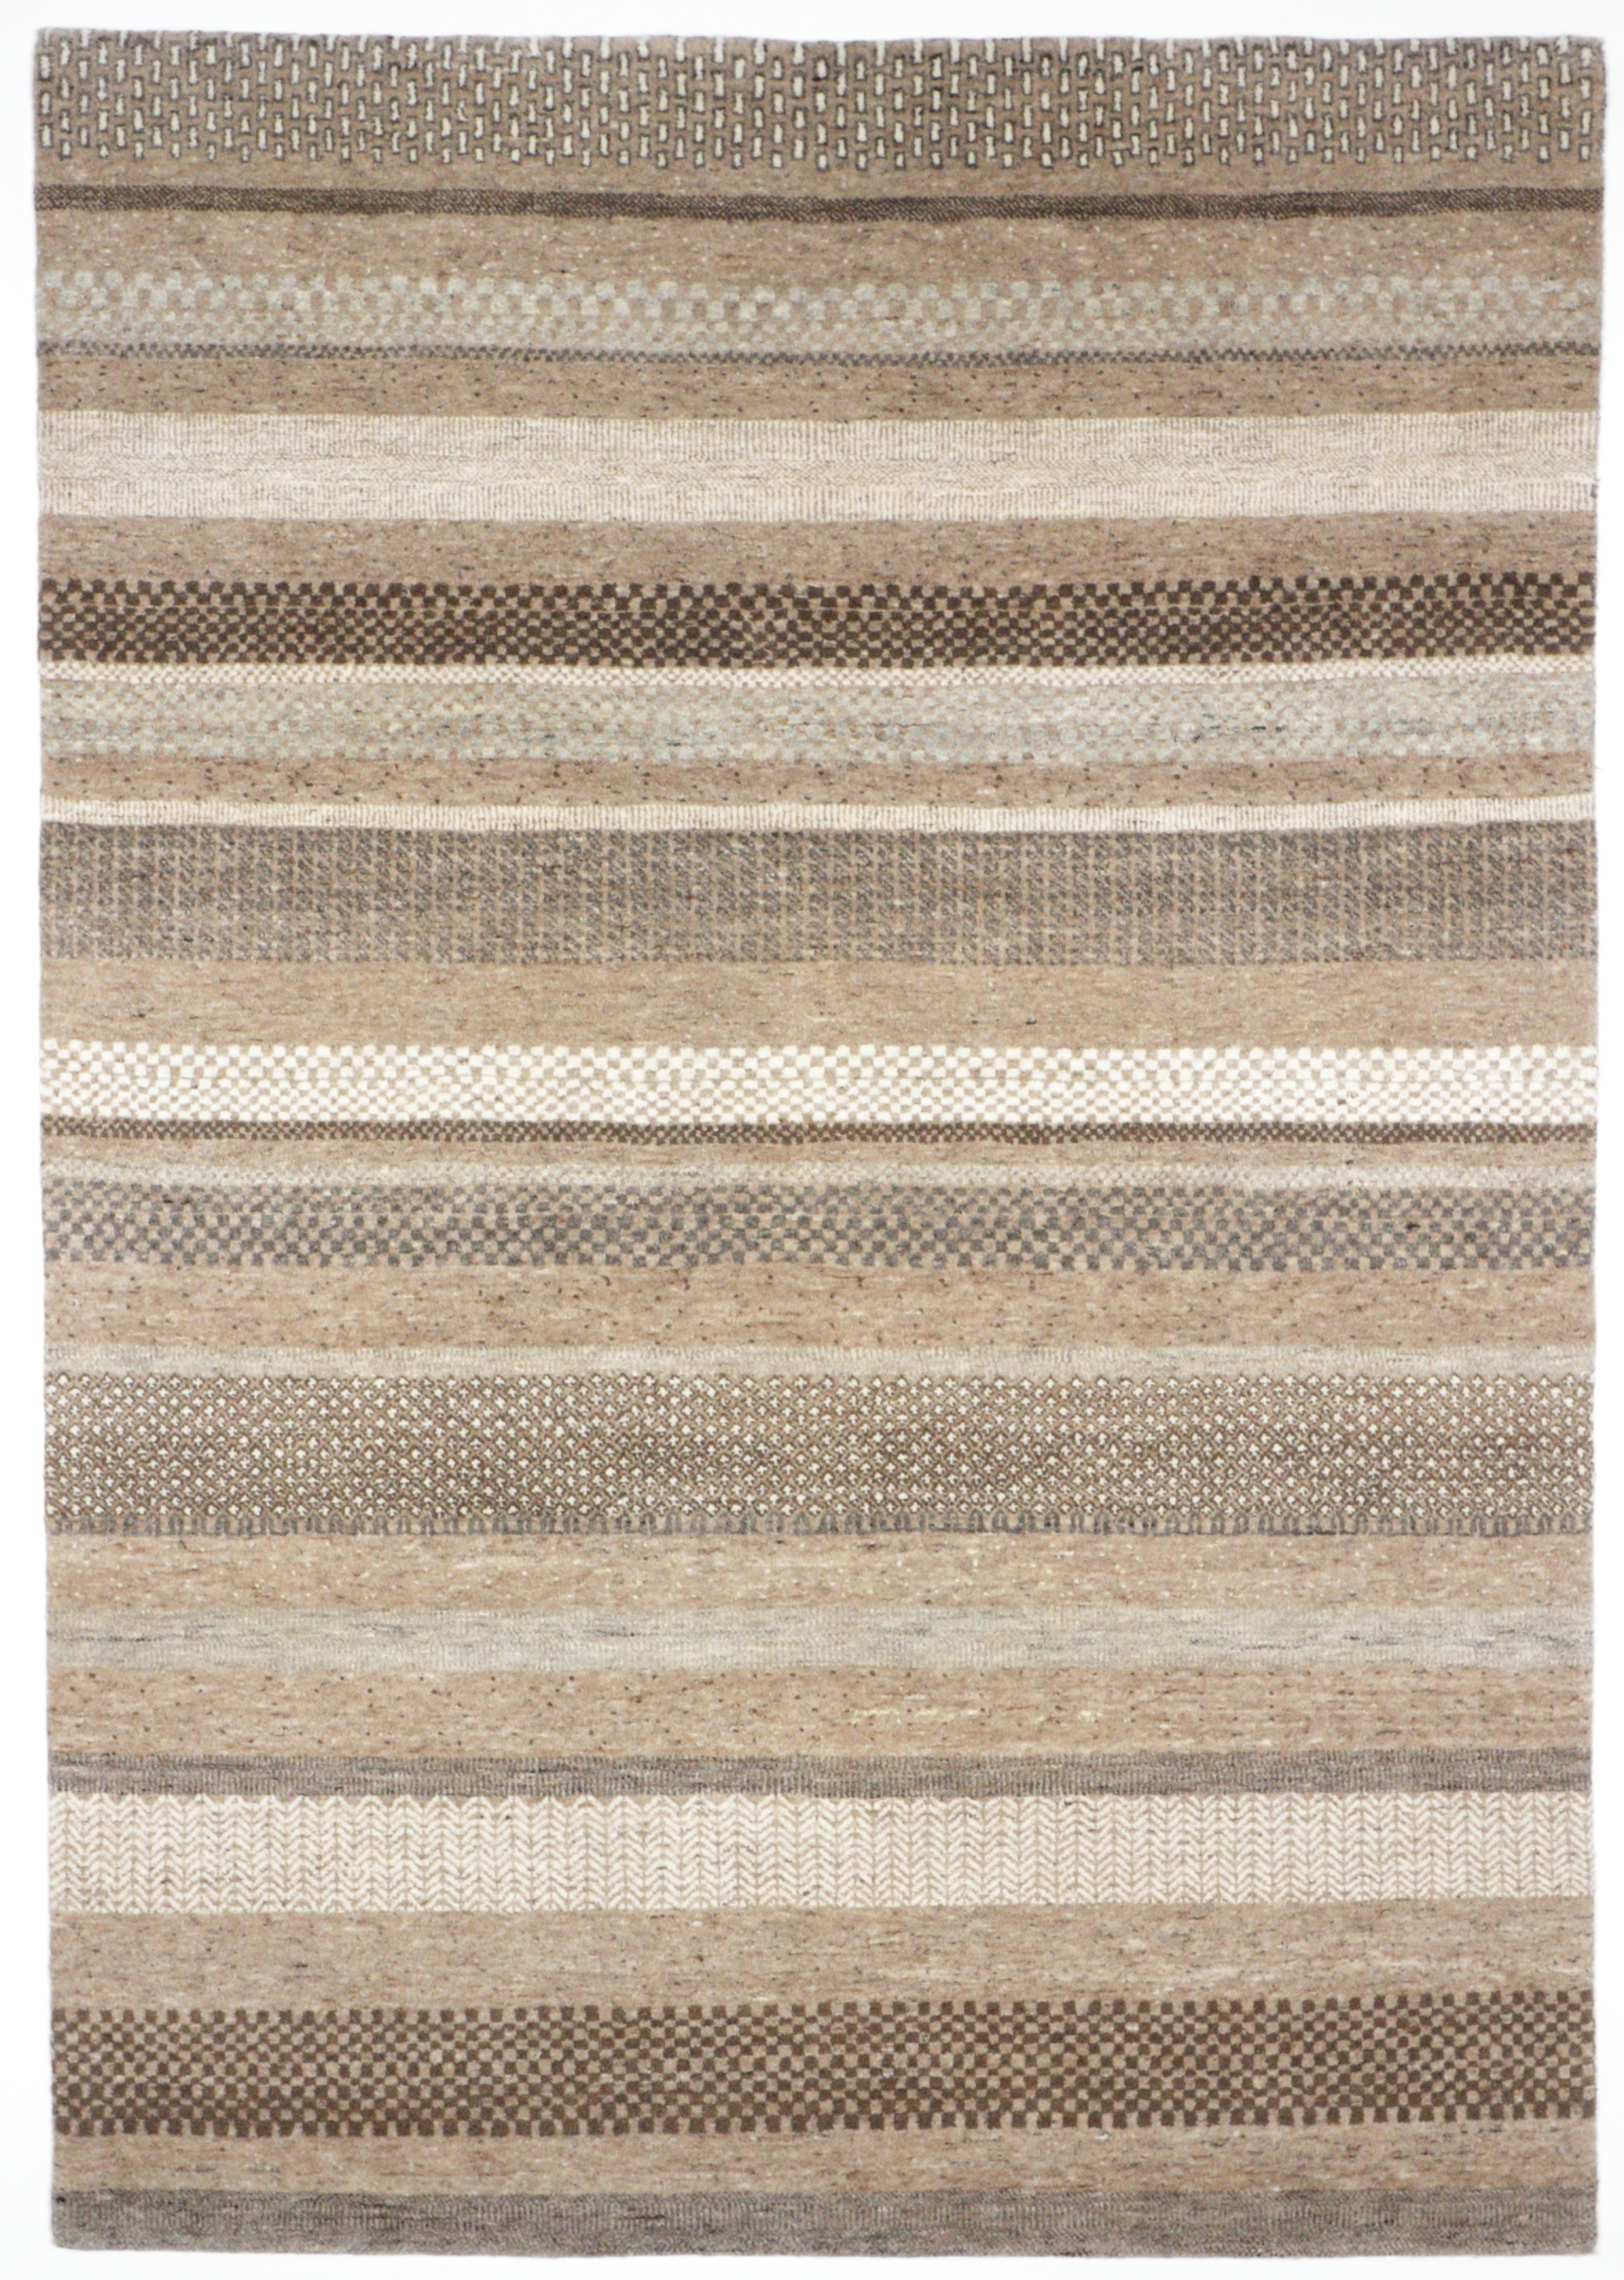 Natur-Pur Teppich mit Streifendesign, handgeknüpft aus Schurwolle in beige/braunen Farben, Draufsicht